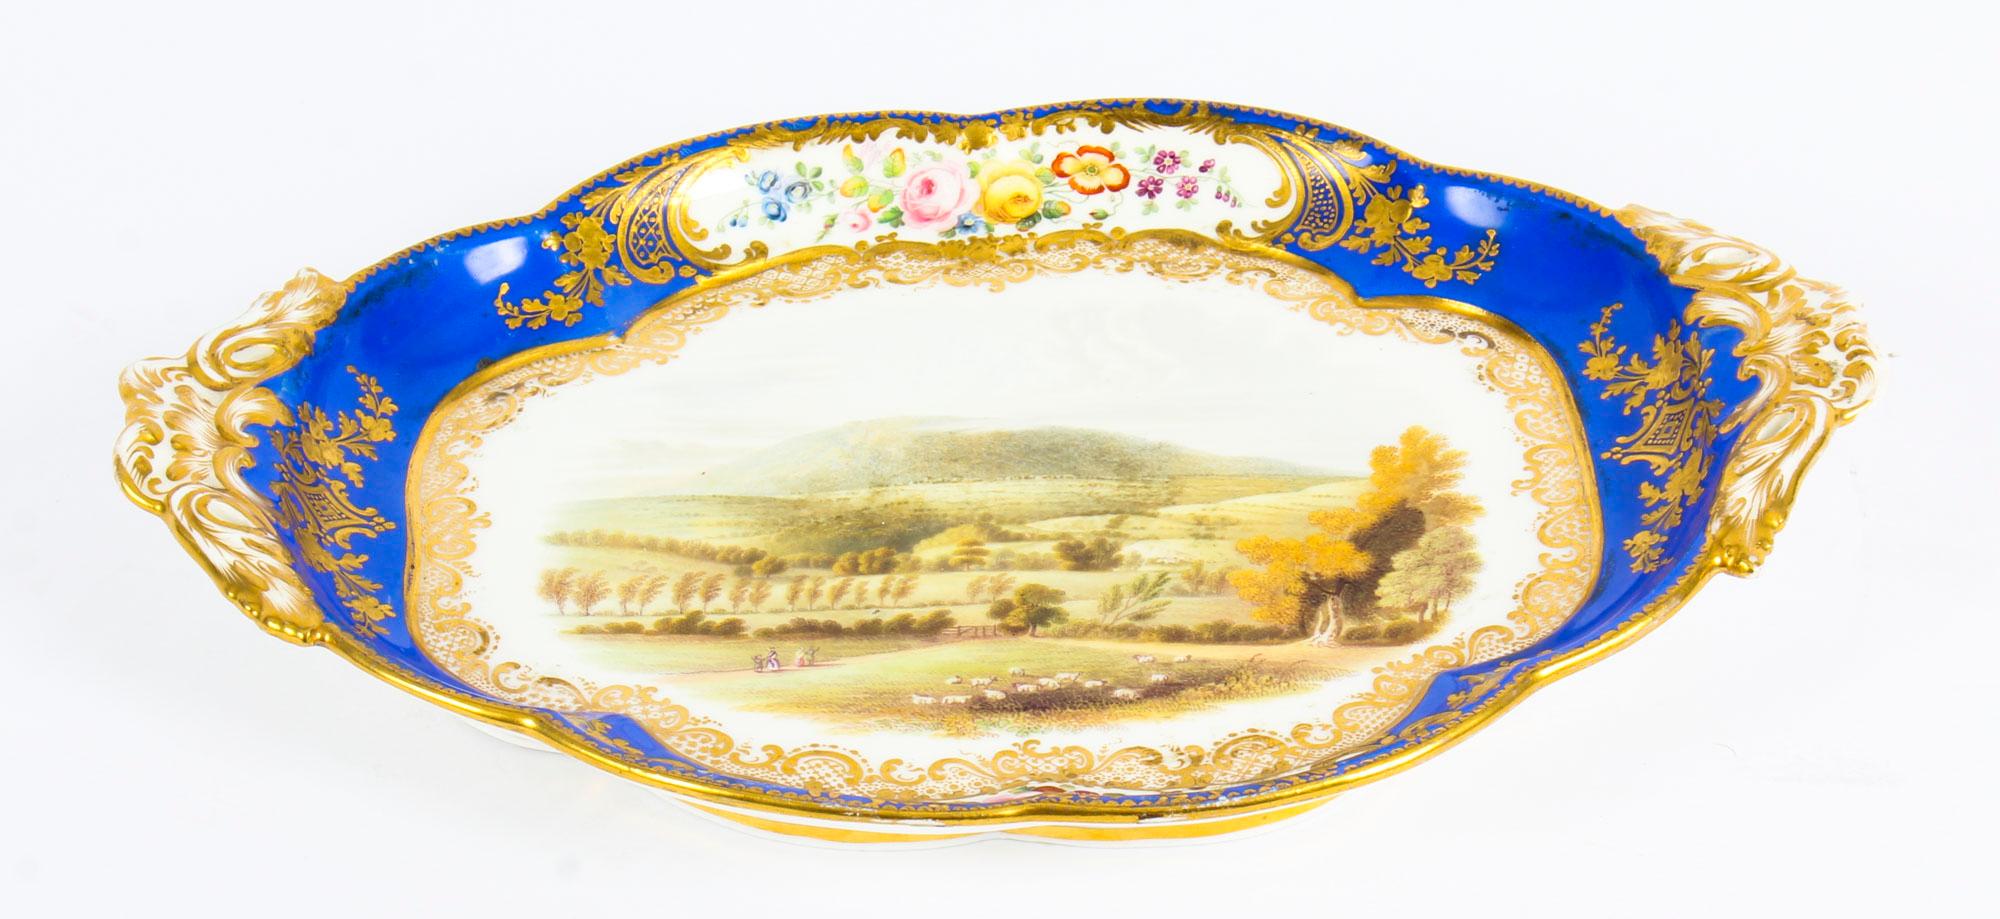 Il s'agit d'un beau et unique plat à paysage en porcelaine Royal Worcester, datant d'environ 1840.
 
Le plat ovale de forme ovale en bleu royal de Worcester est magnifiquement peint d'une vue de The Wrekin dans le Shropshire au centre et encadré